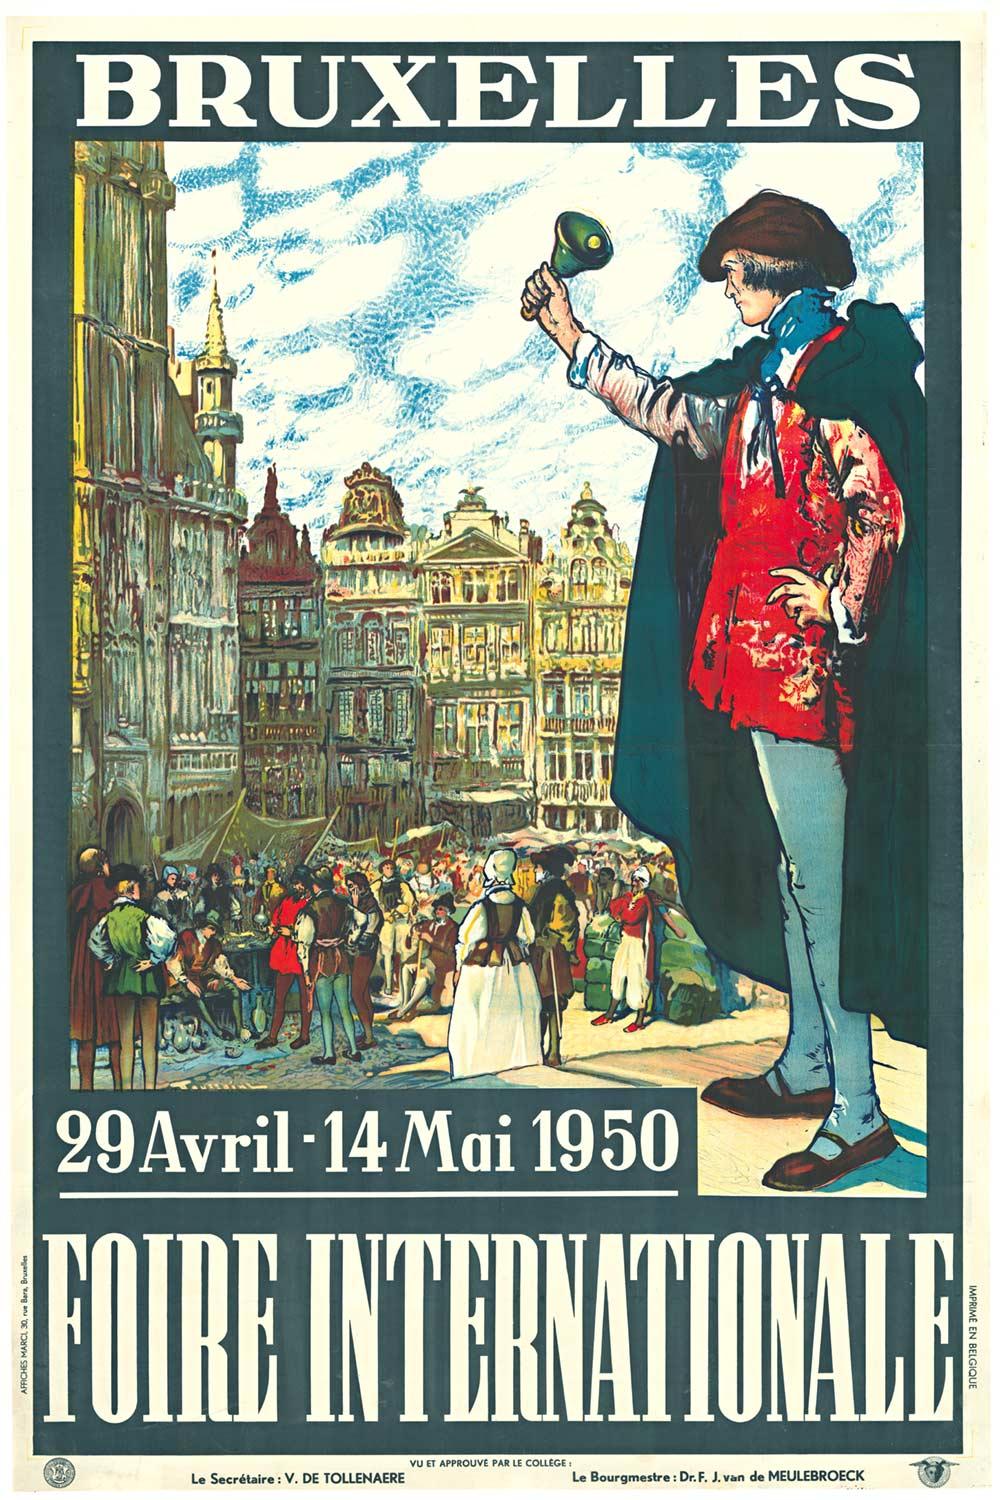 Fernand Toussaint Landscape Print - Original Bruxelles Foire Internationale vintage travel poster